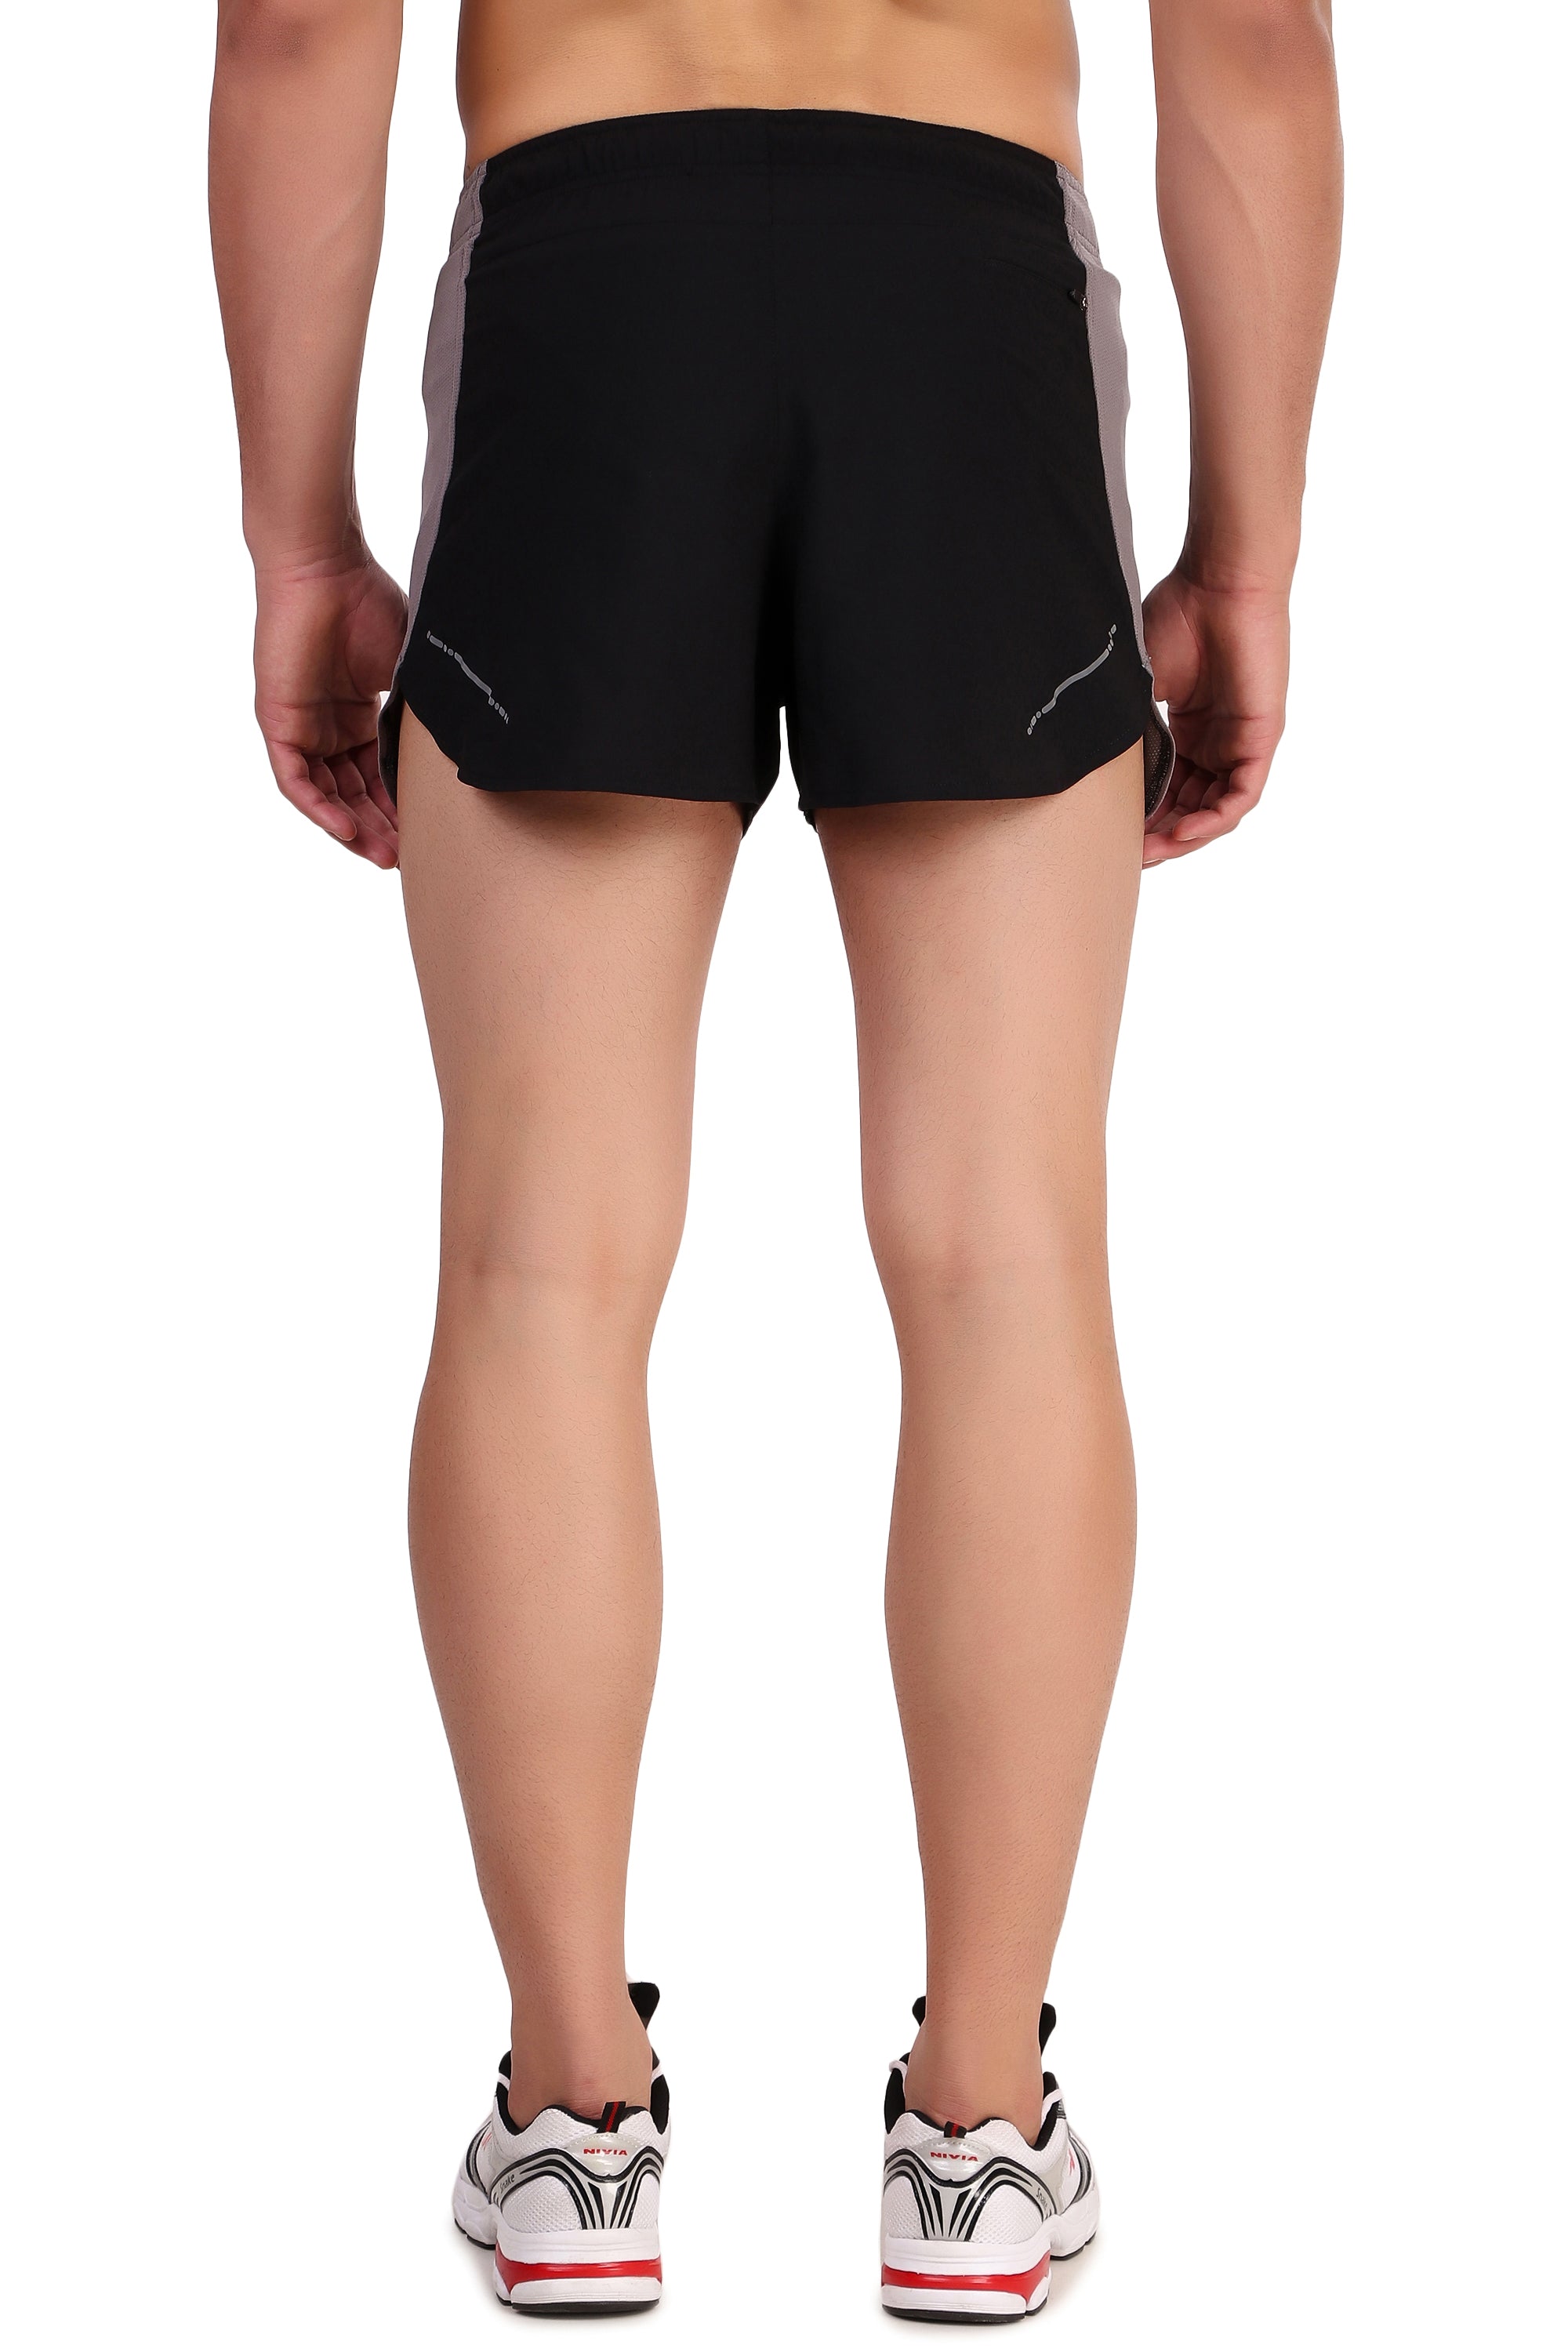 3" Ultra Running Marathon Split Shorts For Men (Black/Beige)